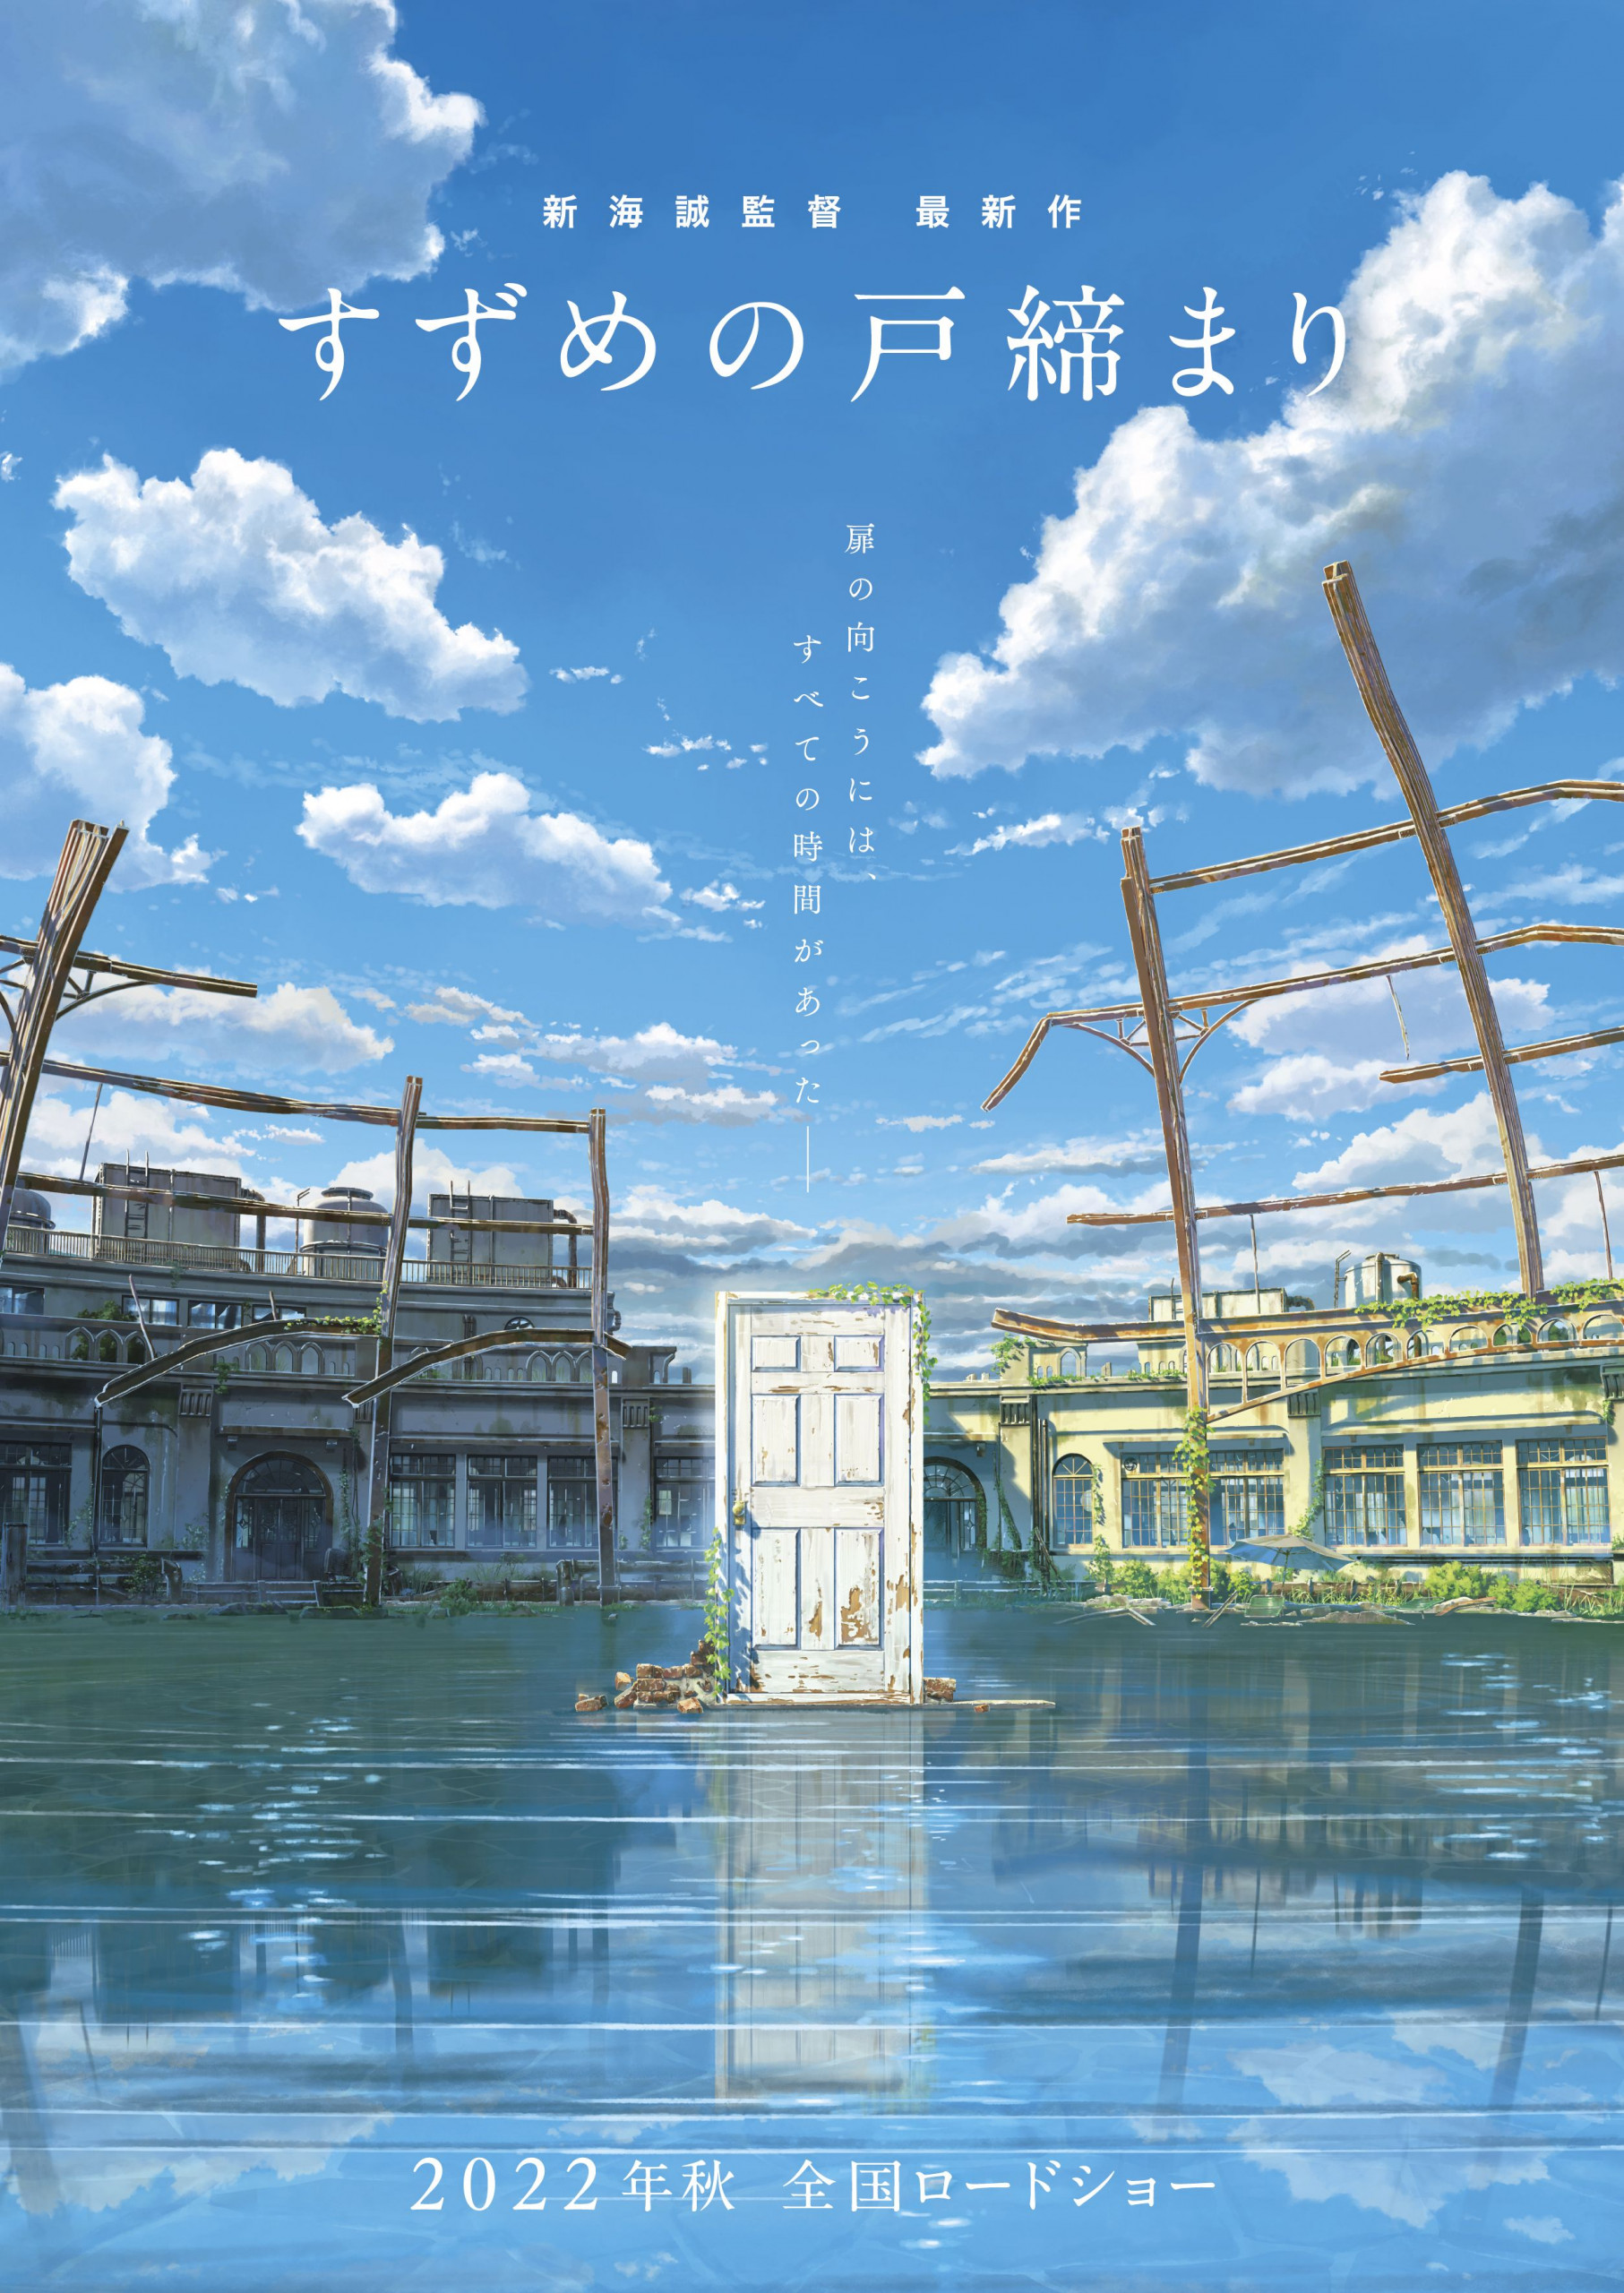 Suzume no Tojimari er Makoto Shinkais næste film og kommer til efteråret 2022